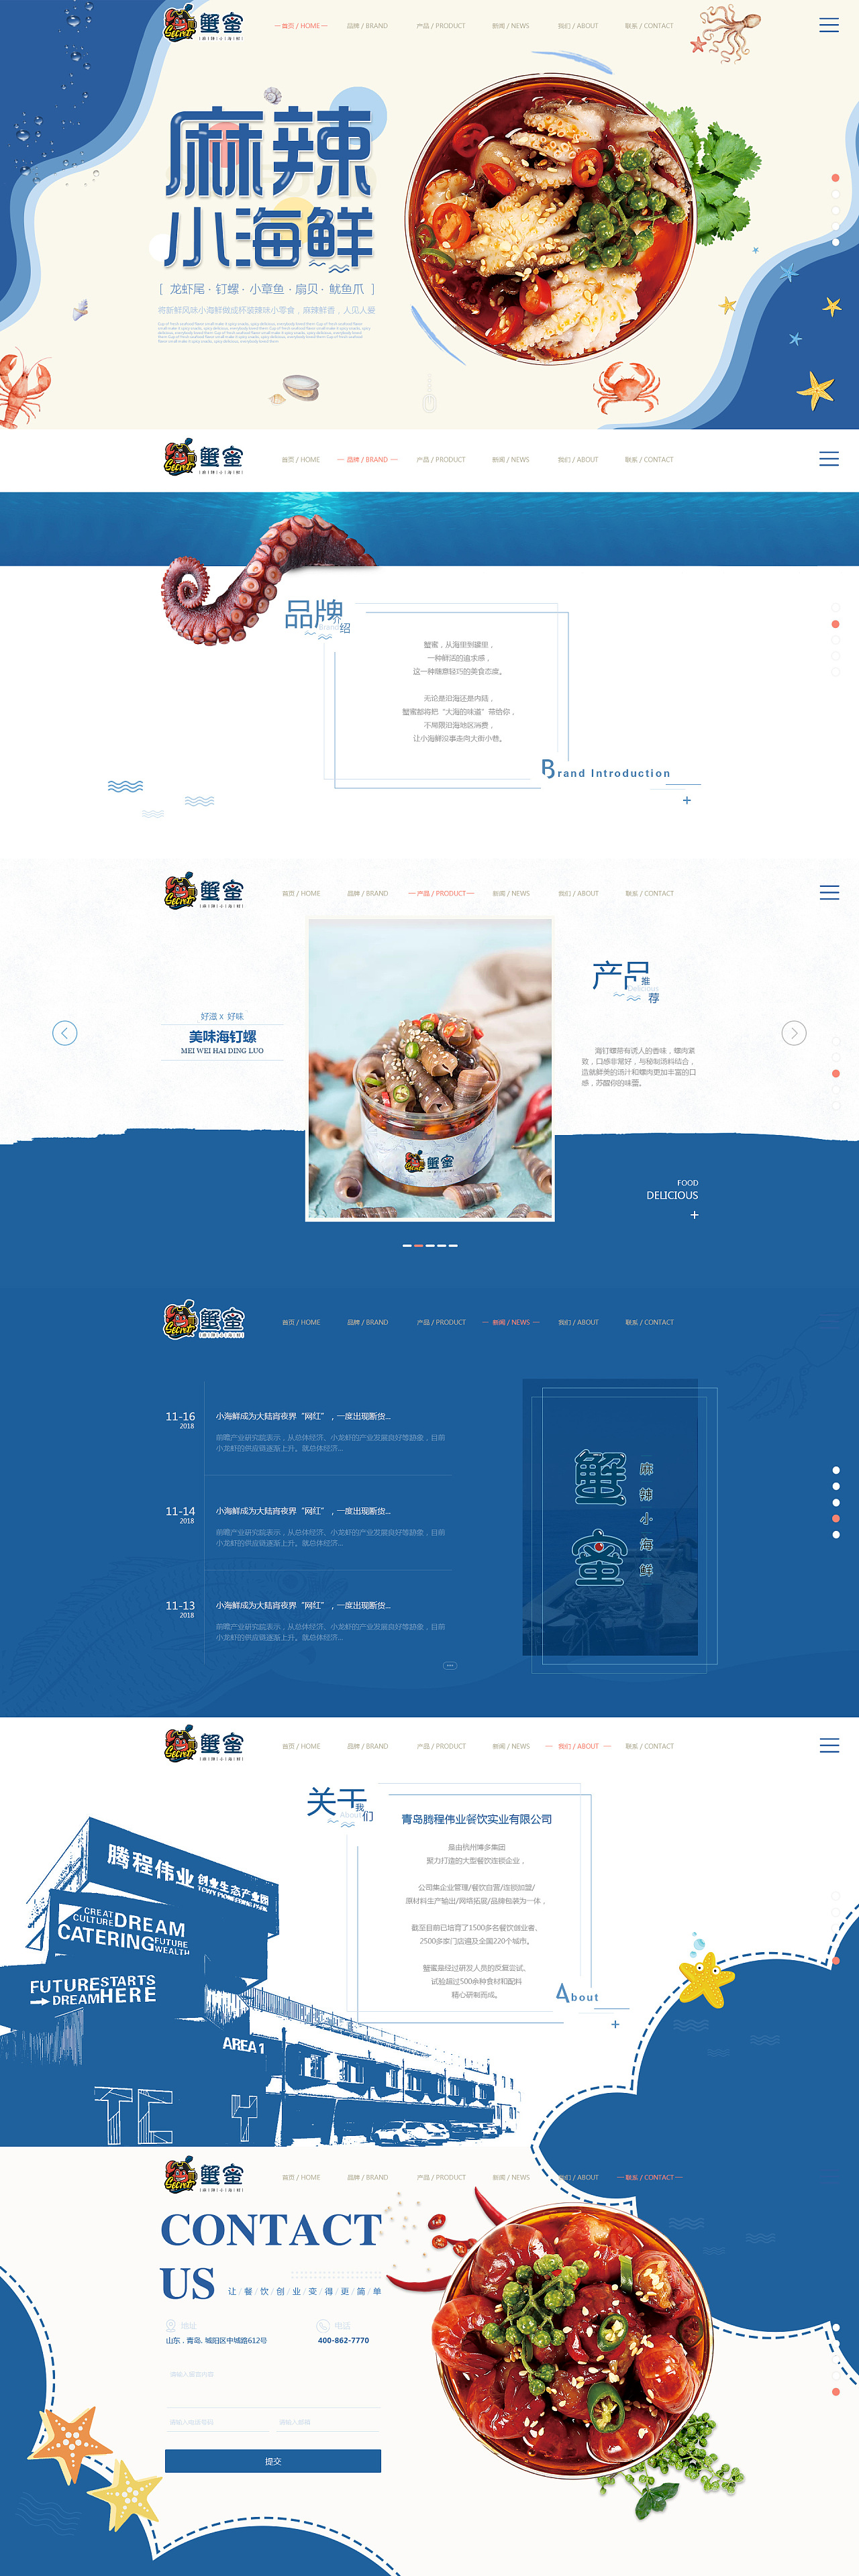 小海鲜网站设计图&美食设计&餐饮设计